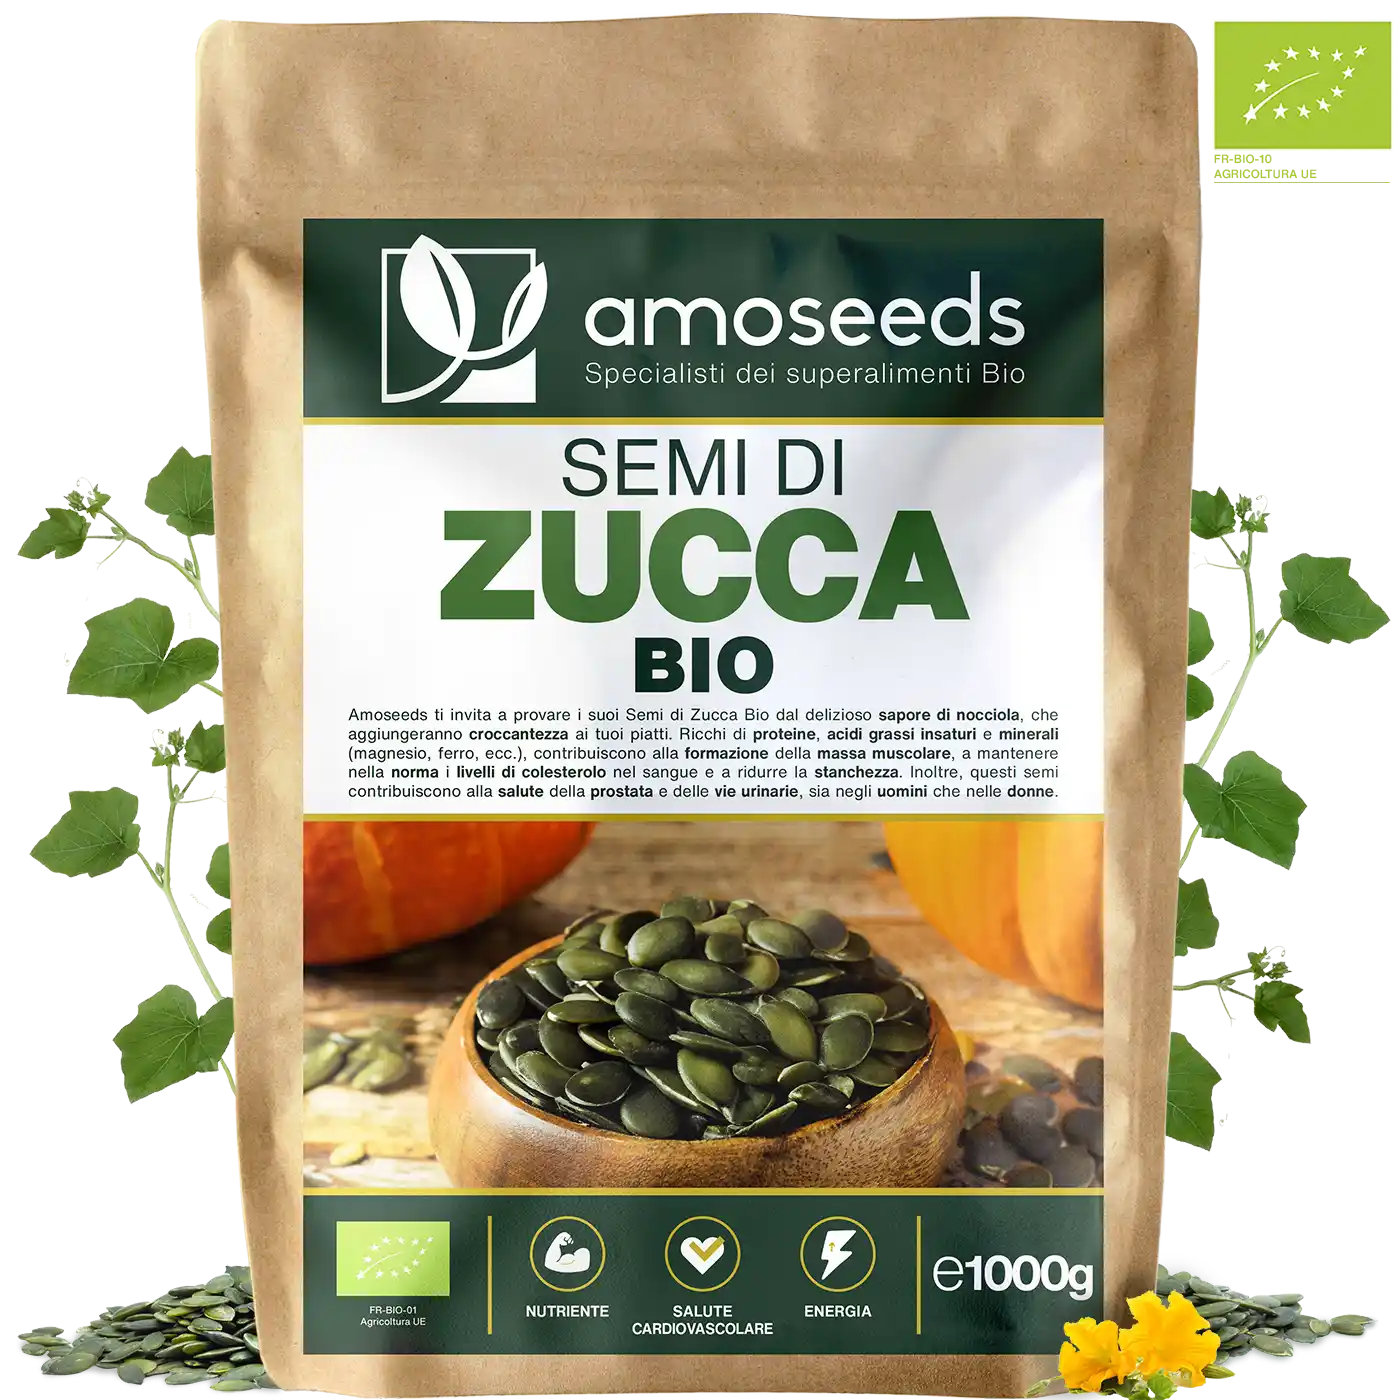 Semi Zucca Bio amoseeds specialisti dei superalimenti bio